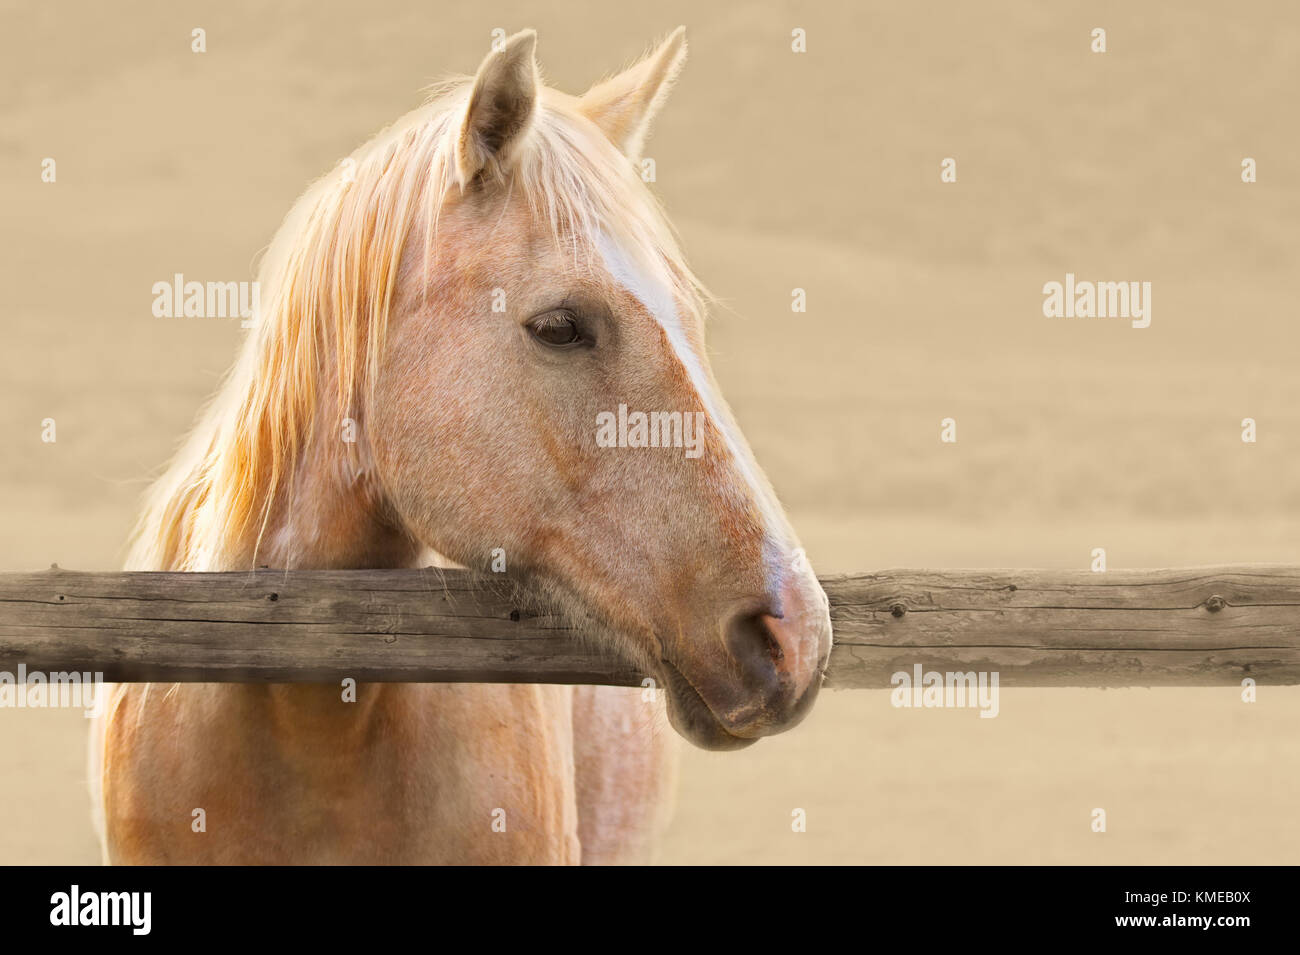 Palomino caballo mira sobre un raíl corral de madera Foto de stock